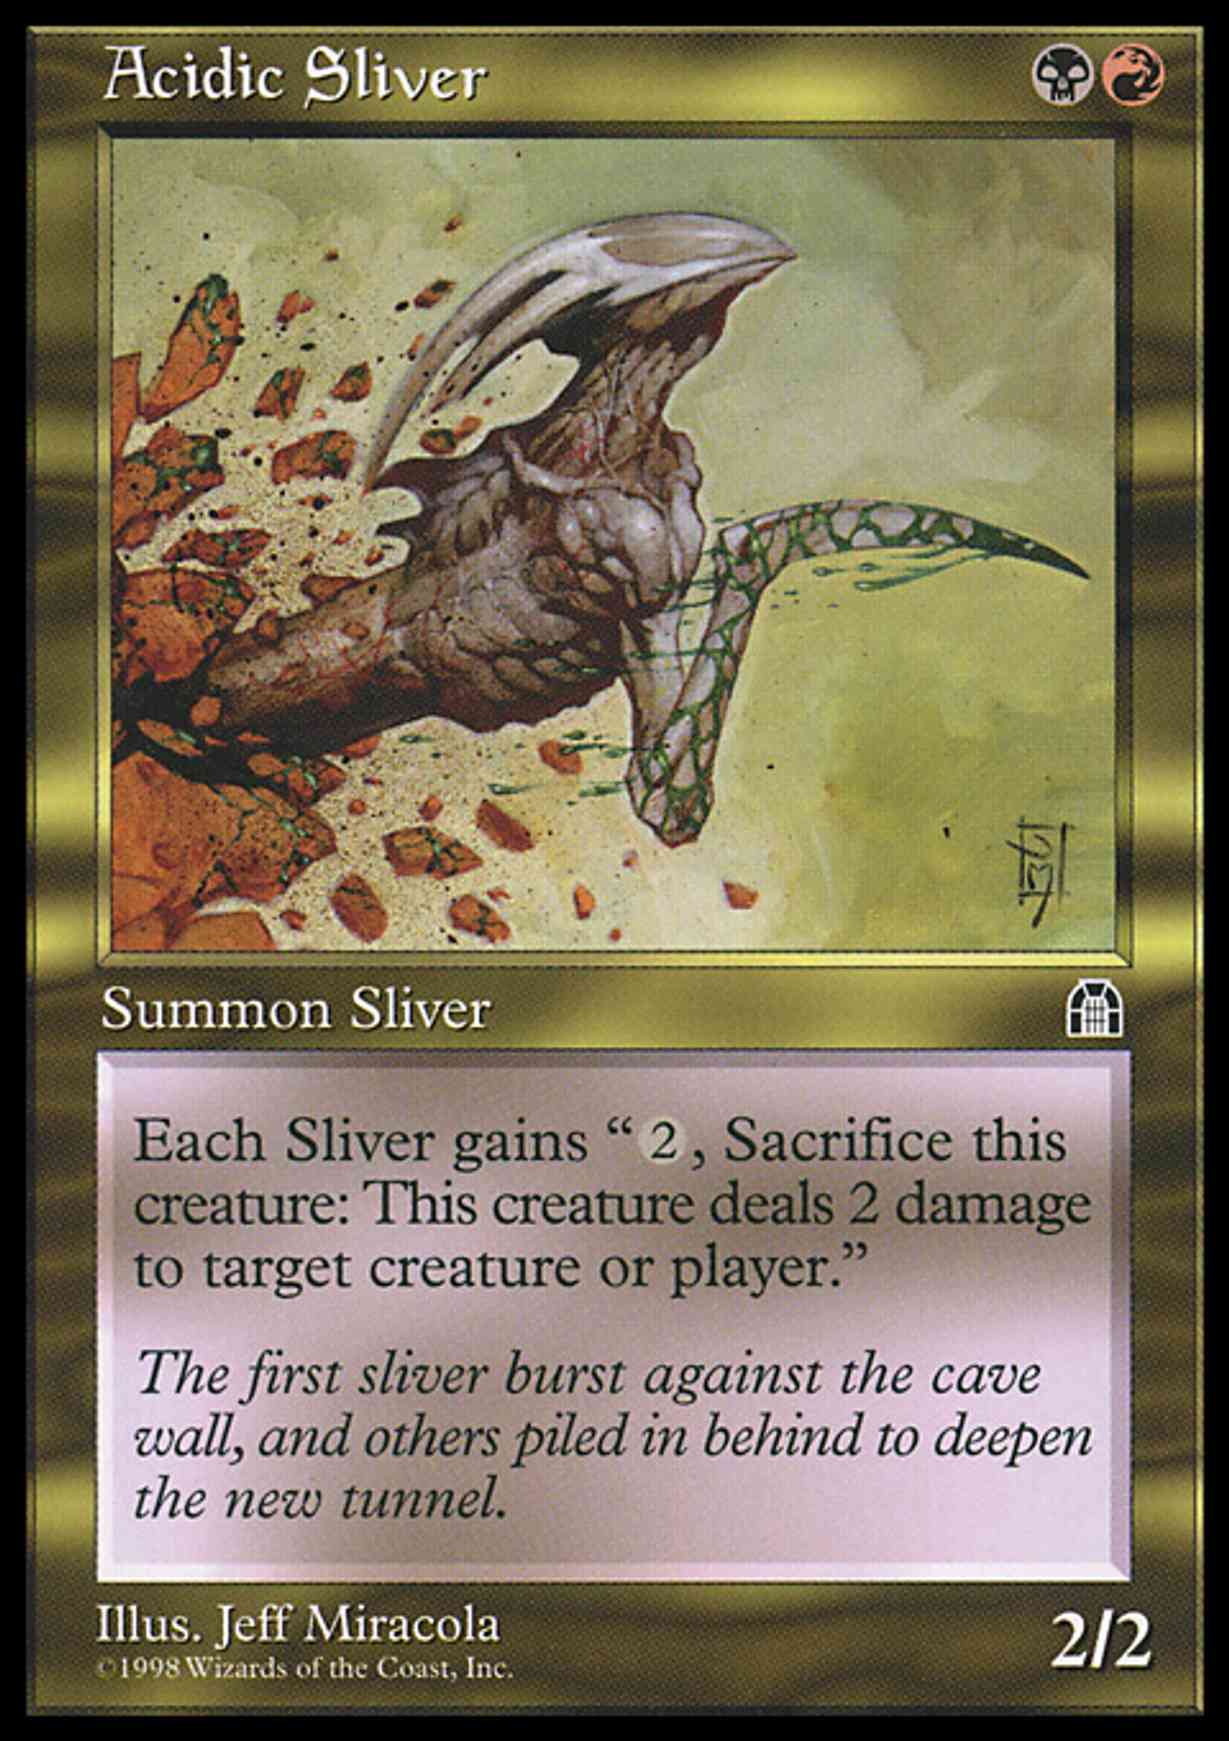 Acidic Sliver magic card front